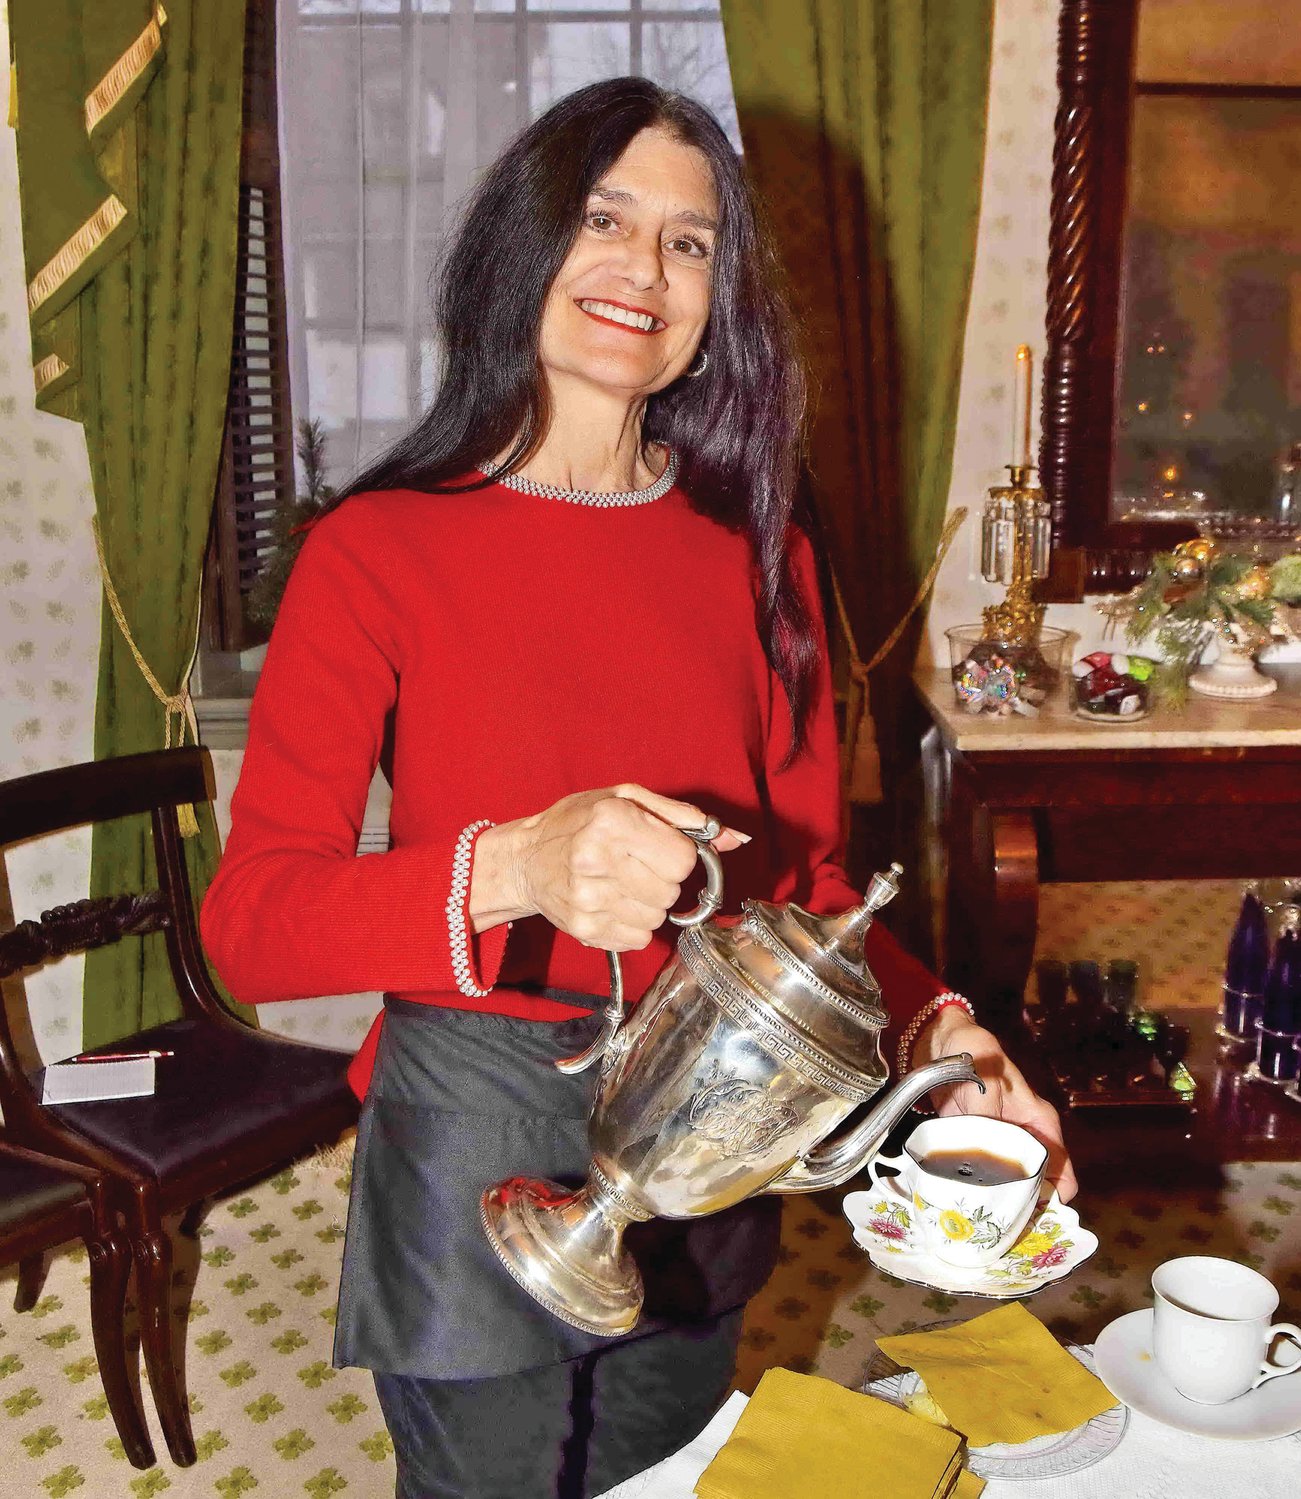 Michele Gunnells serves the “Spirited” Tea.